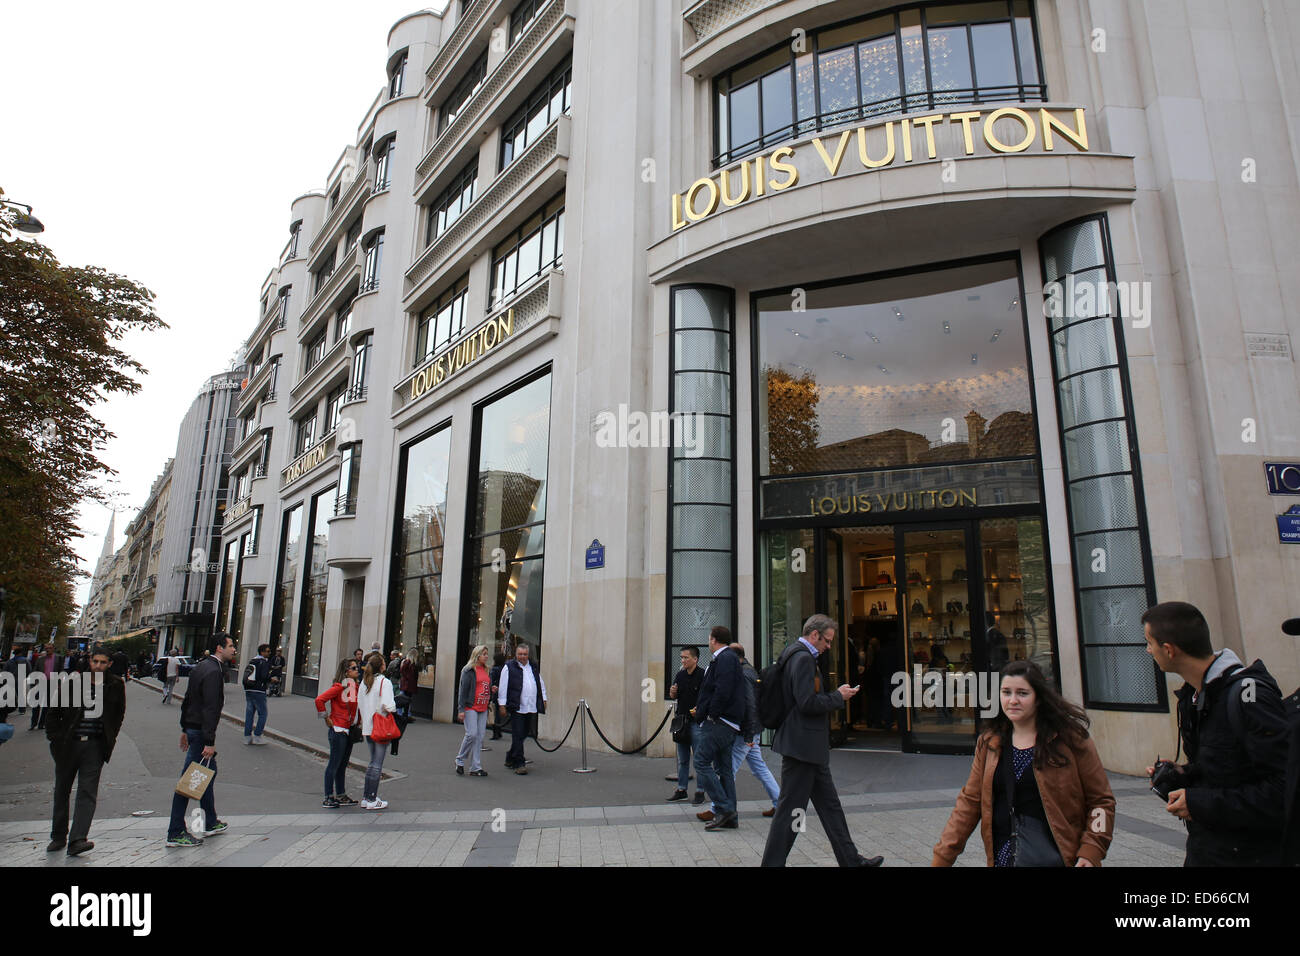 Louis Vuitton Stockfotos und -bilder Kaufen - Alamy